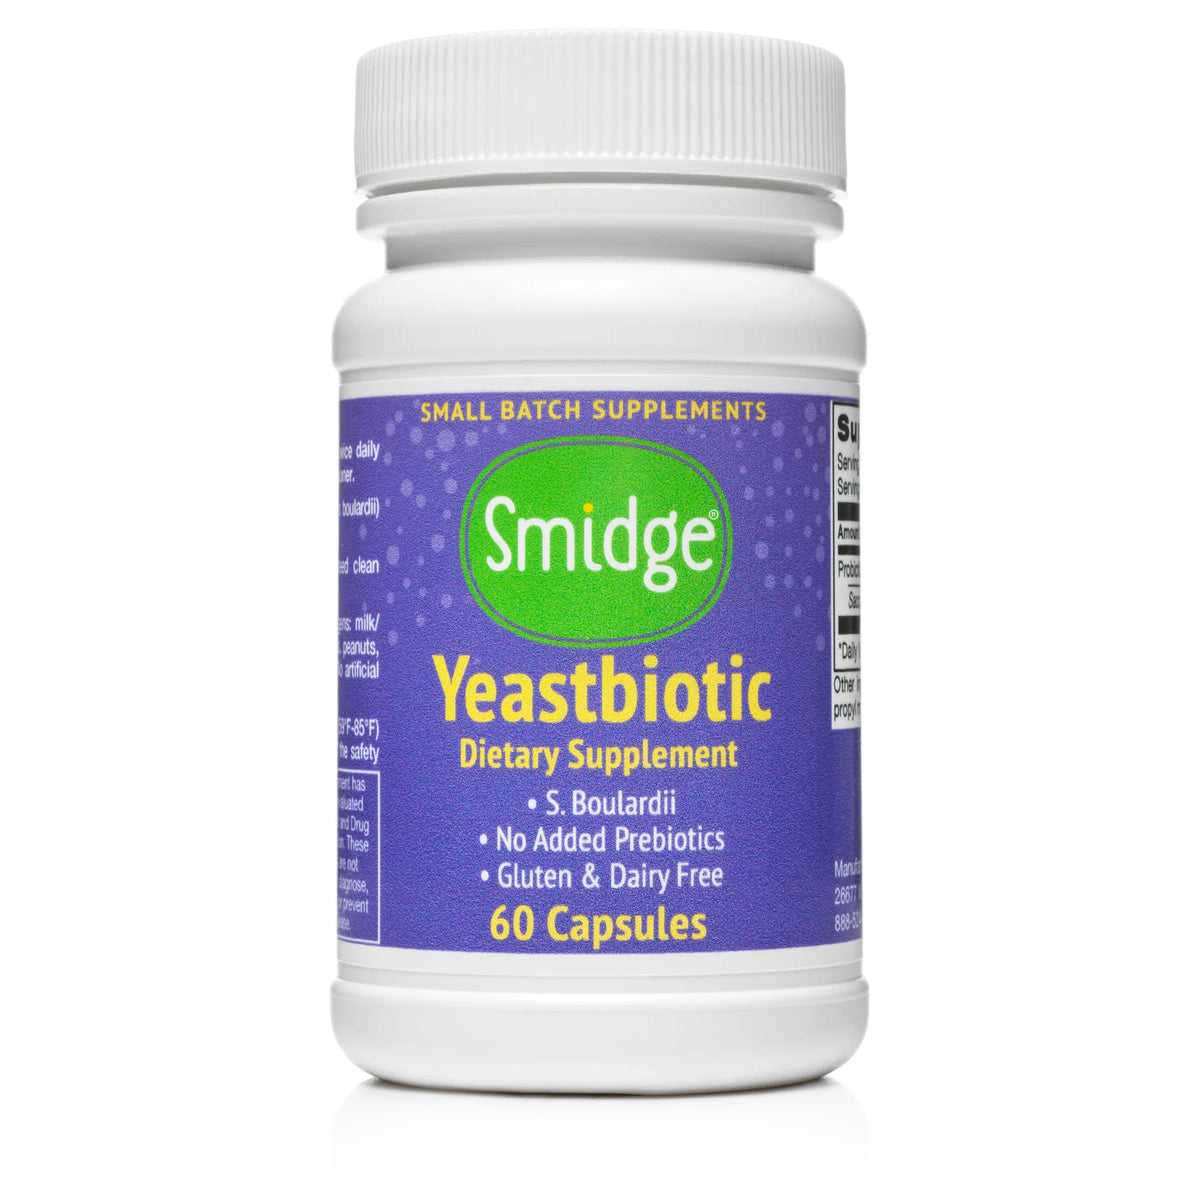 Smidge Yeastbiotic